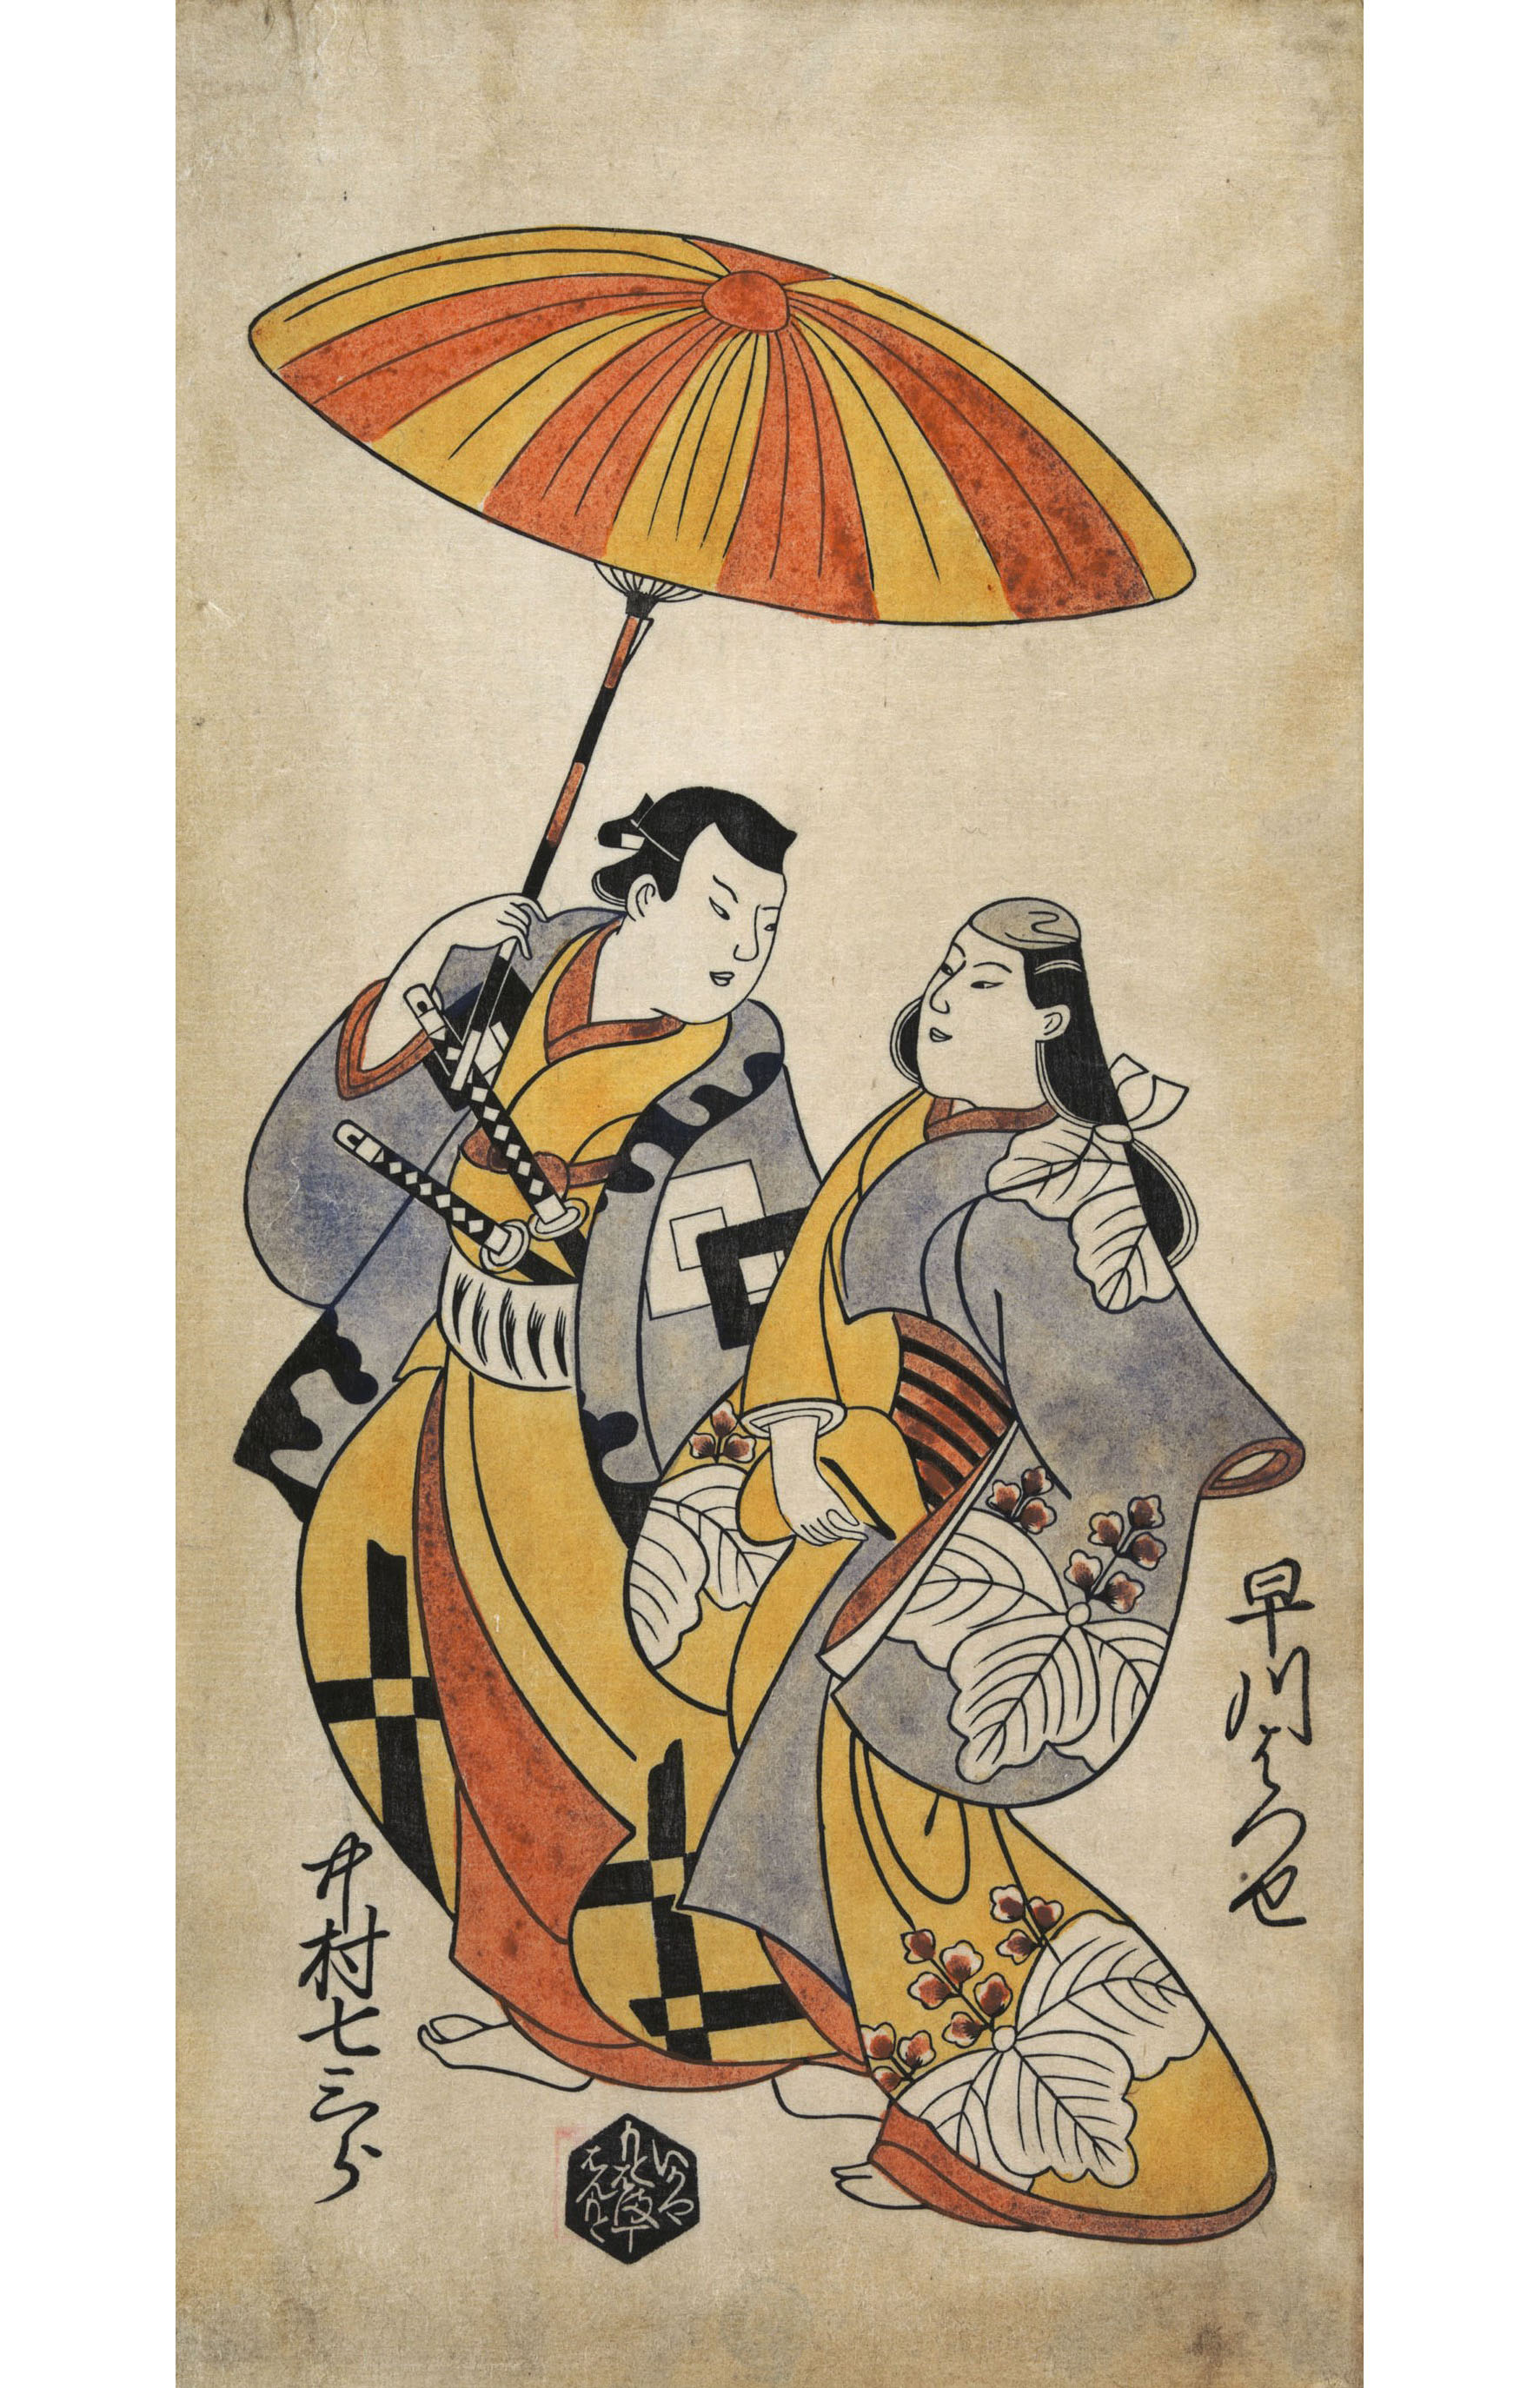 Тории Киёнобу. "Двое влюблённых под зонтиком. Актёры Хаякава Хасуцэ и Накамура Ситисабуро.".